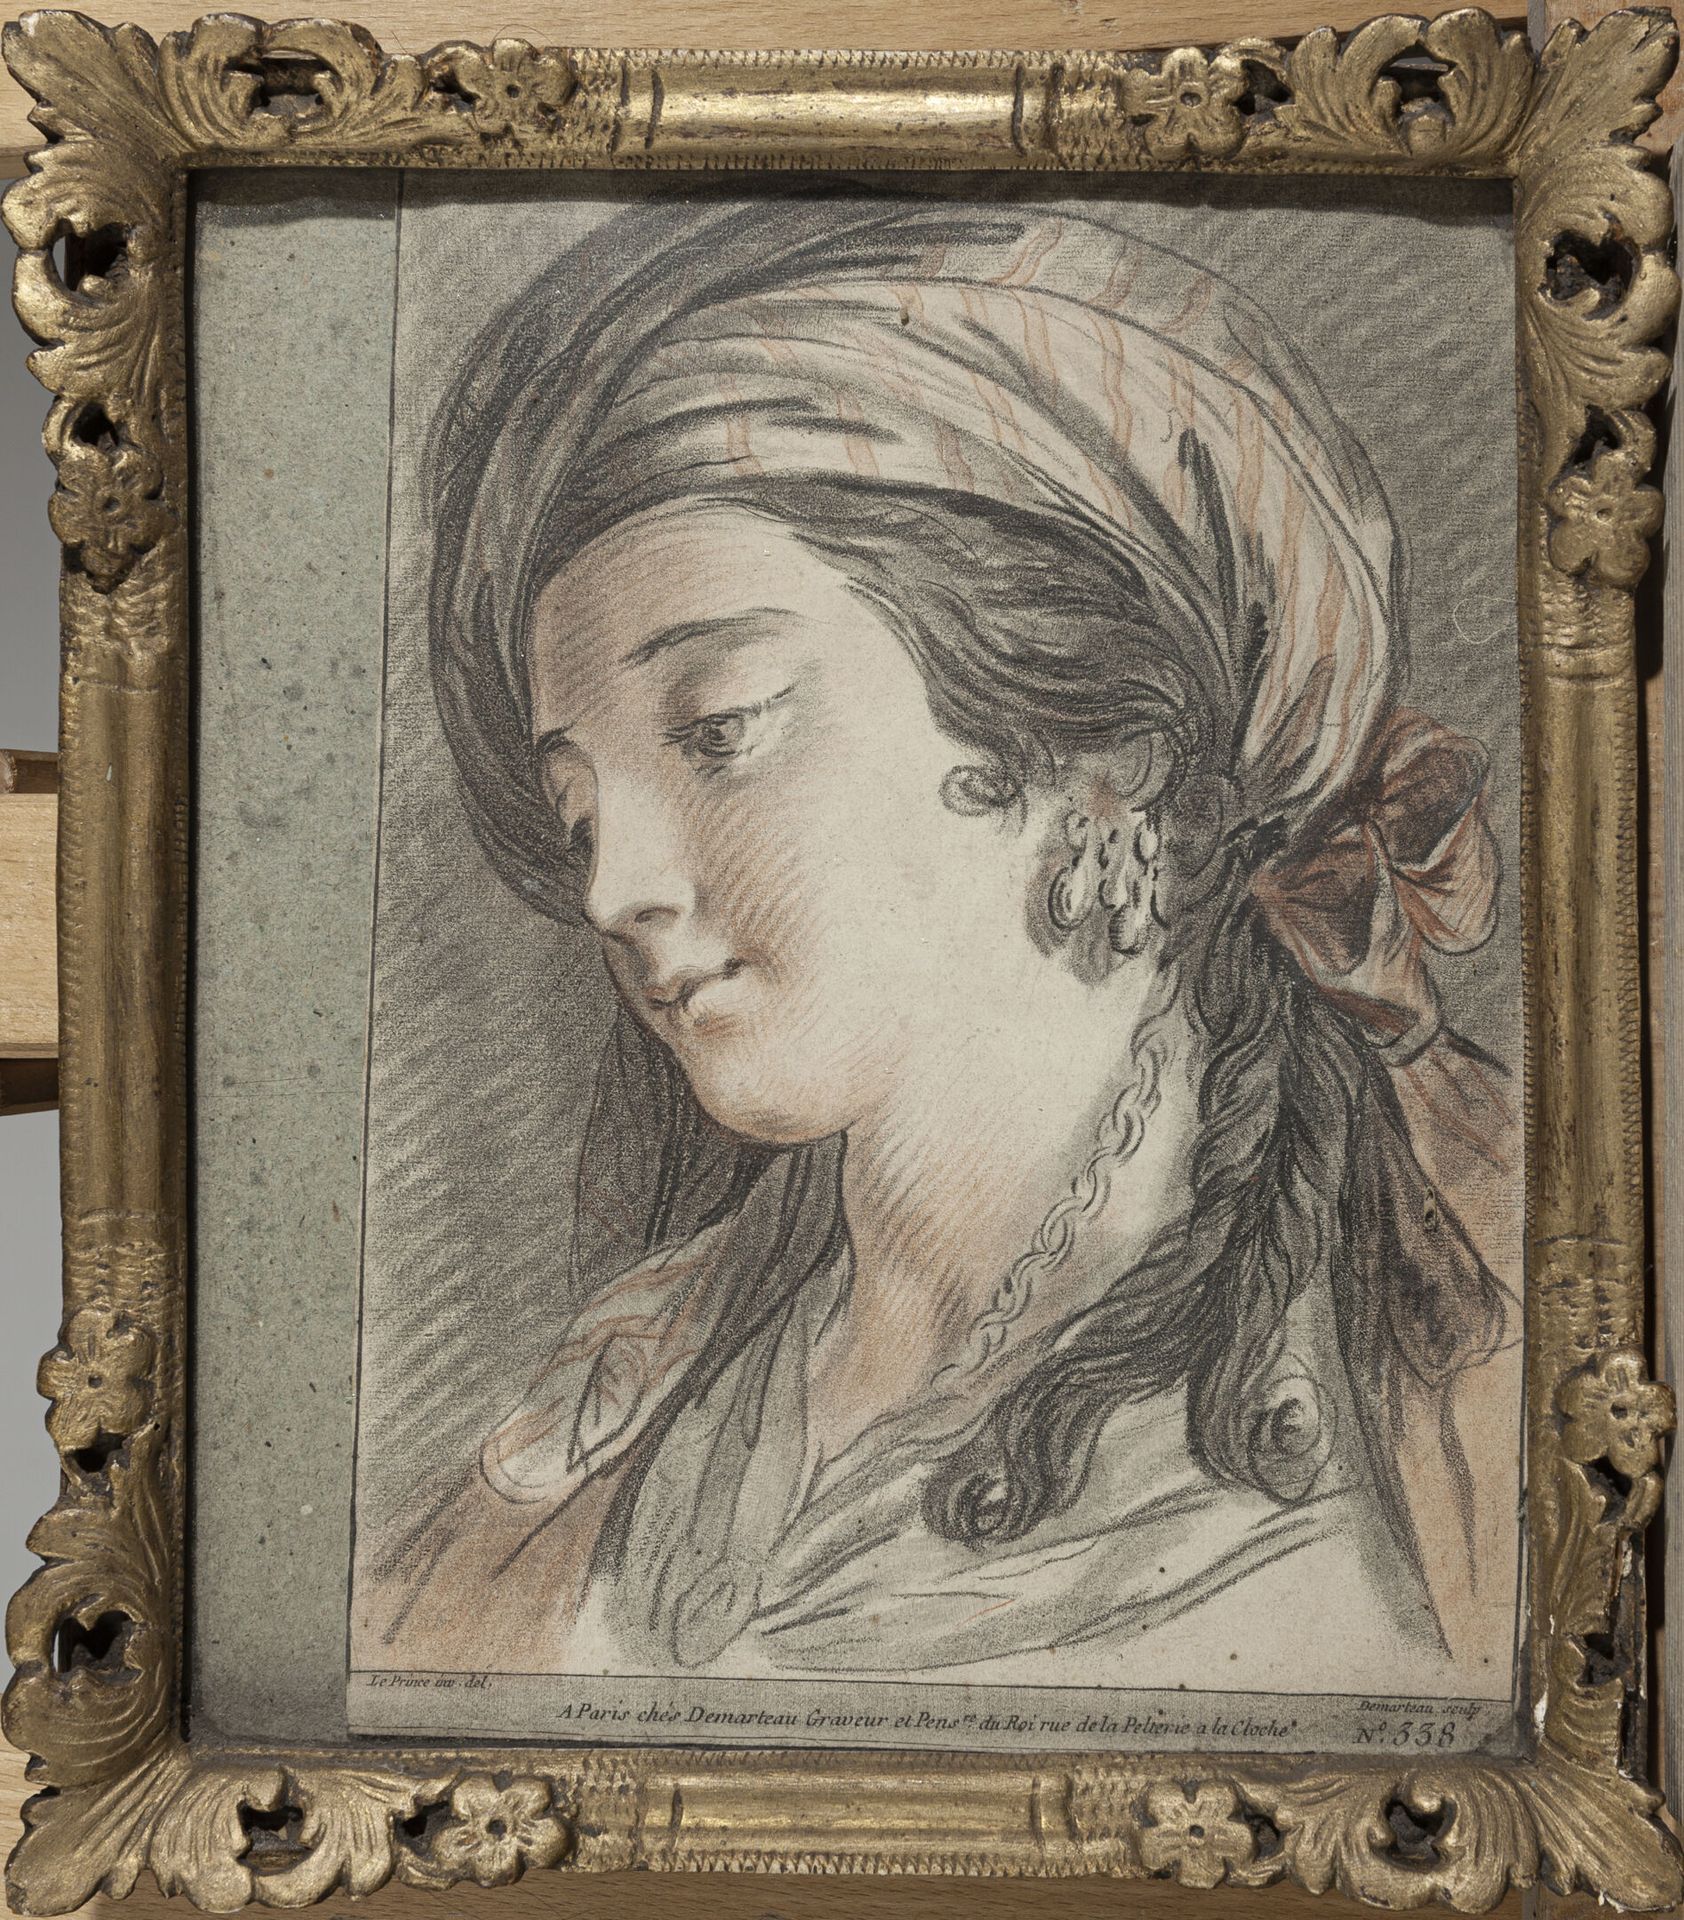 Null 吉勒-德马特奥 (1722-1776)

戴着头巾的妇女形象

以LEPRINCE的绘画方式进行雕刻

"Demarteau sculp N°338"&hellip;